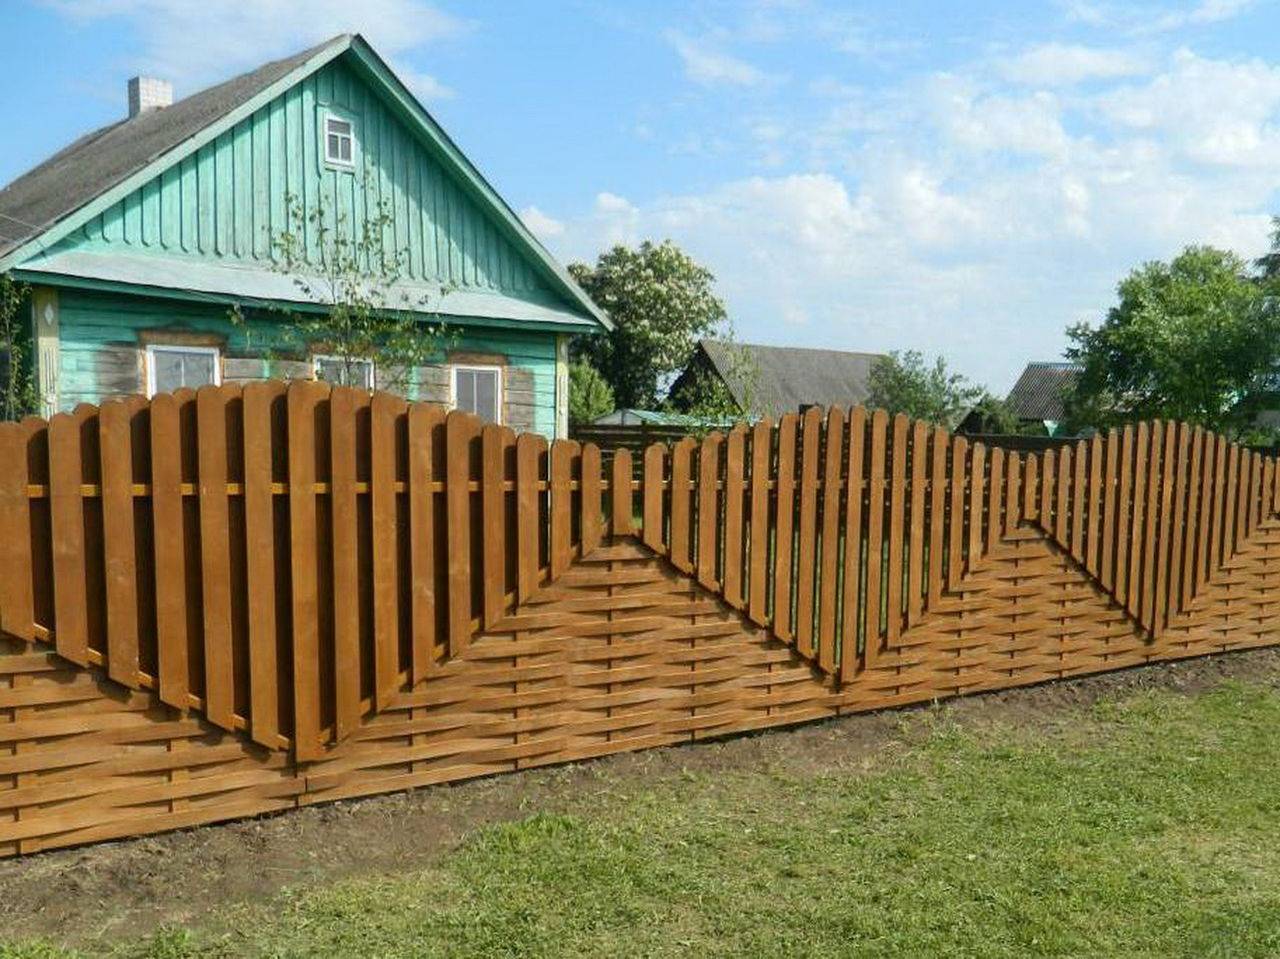 Как украсить забор на даче: идеи декорирования и ландшафтного дизайна